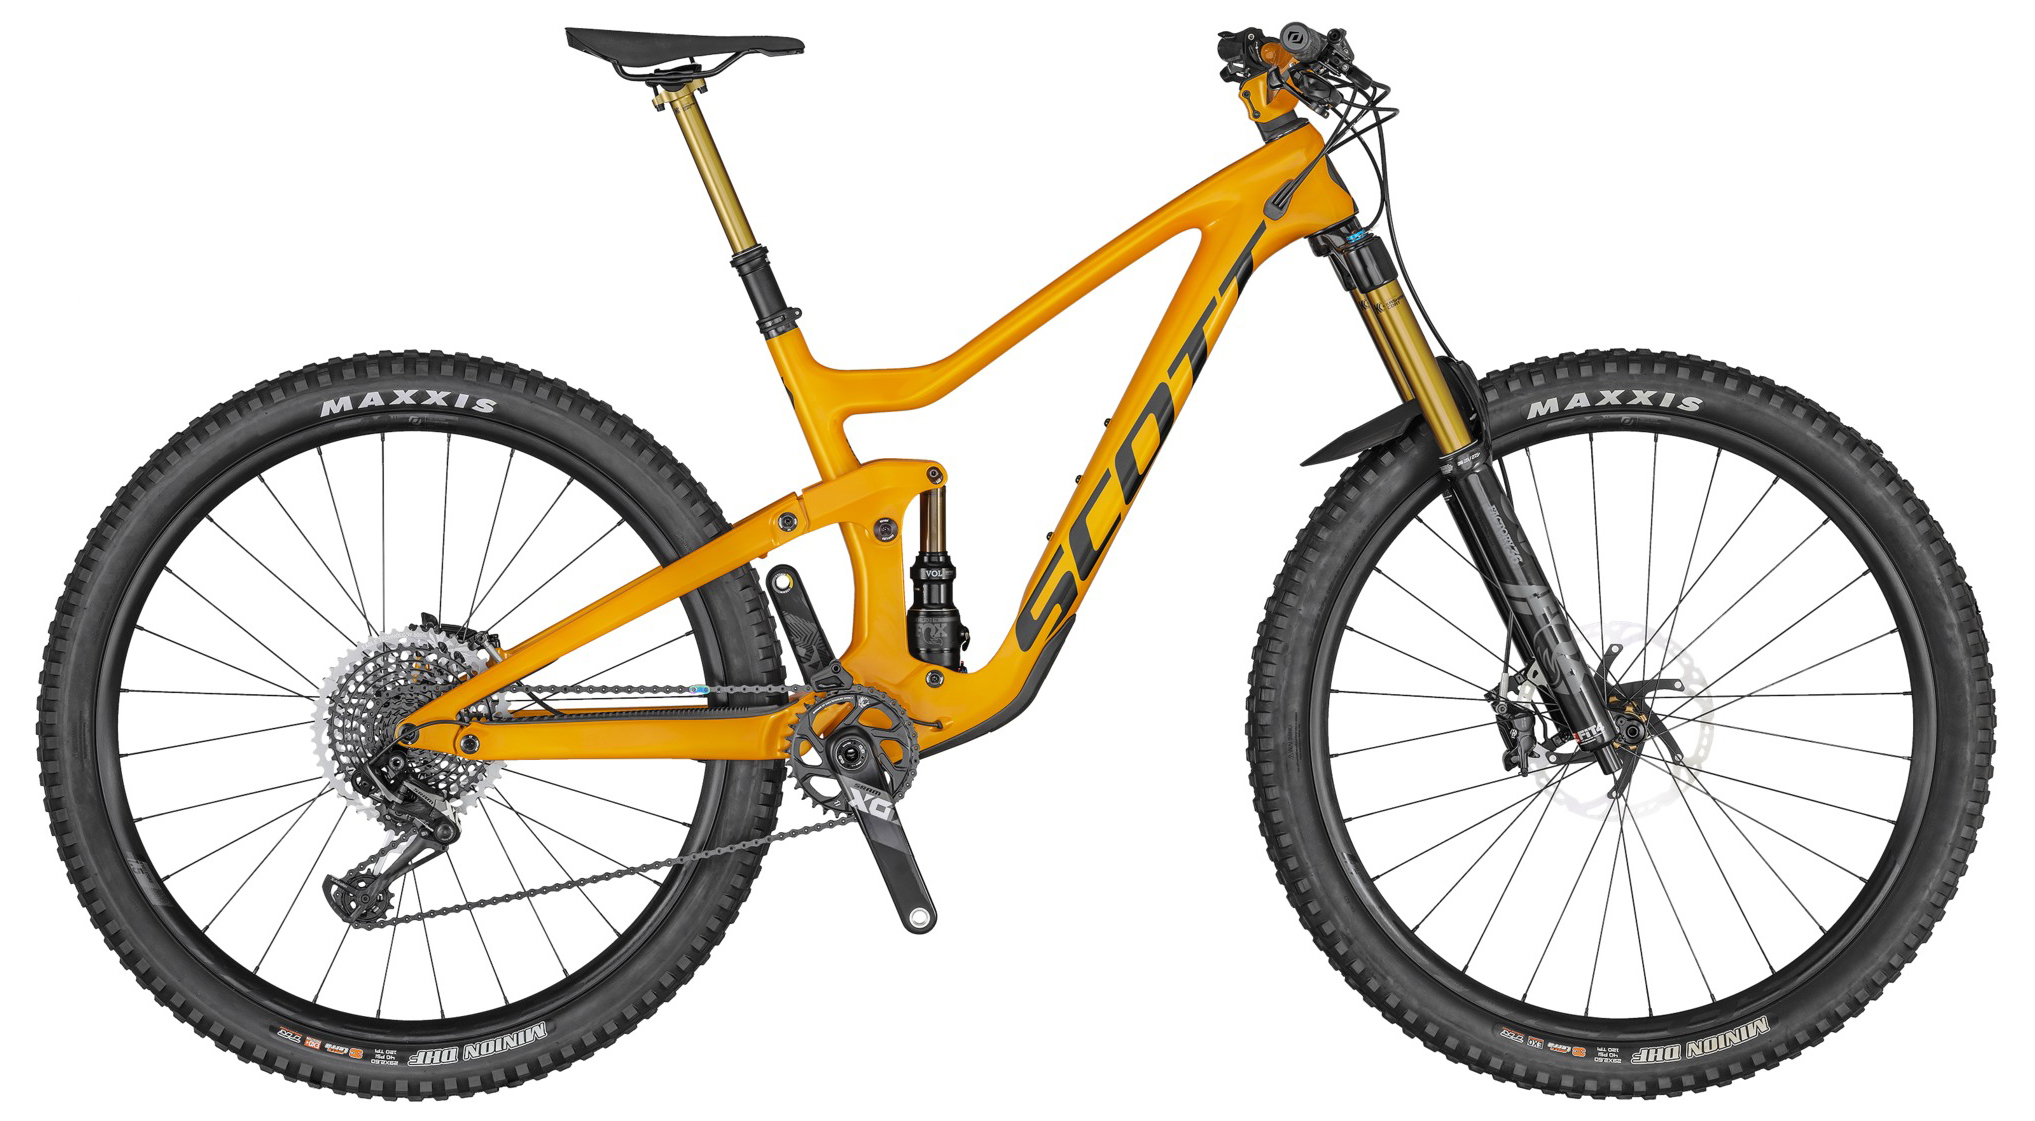  Отзывы о Двухподвесном велосипеде Scott Ransom 900 Tuned 2020